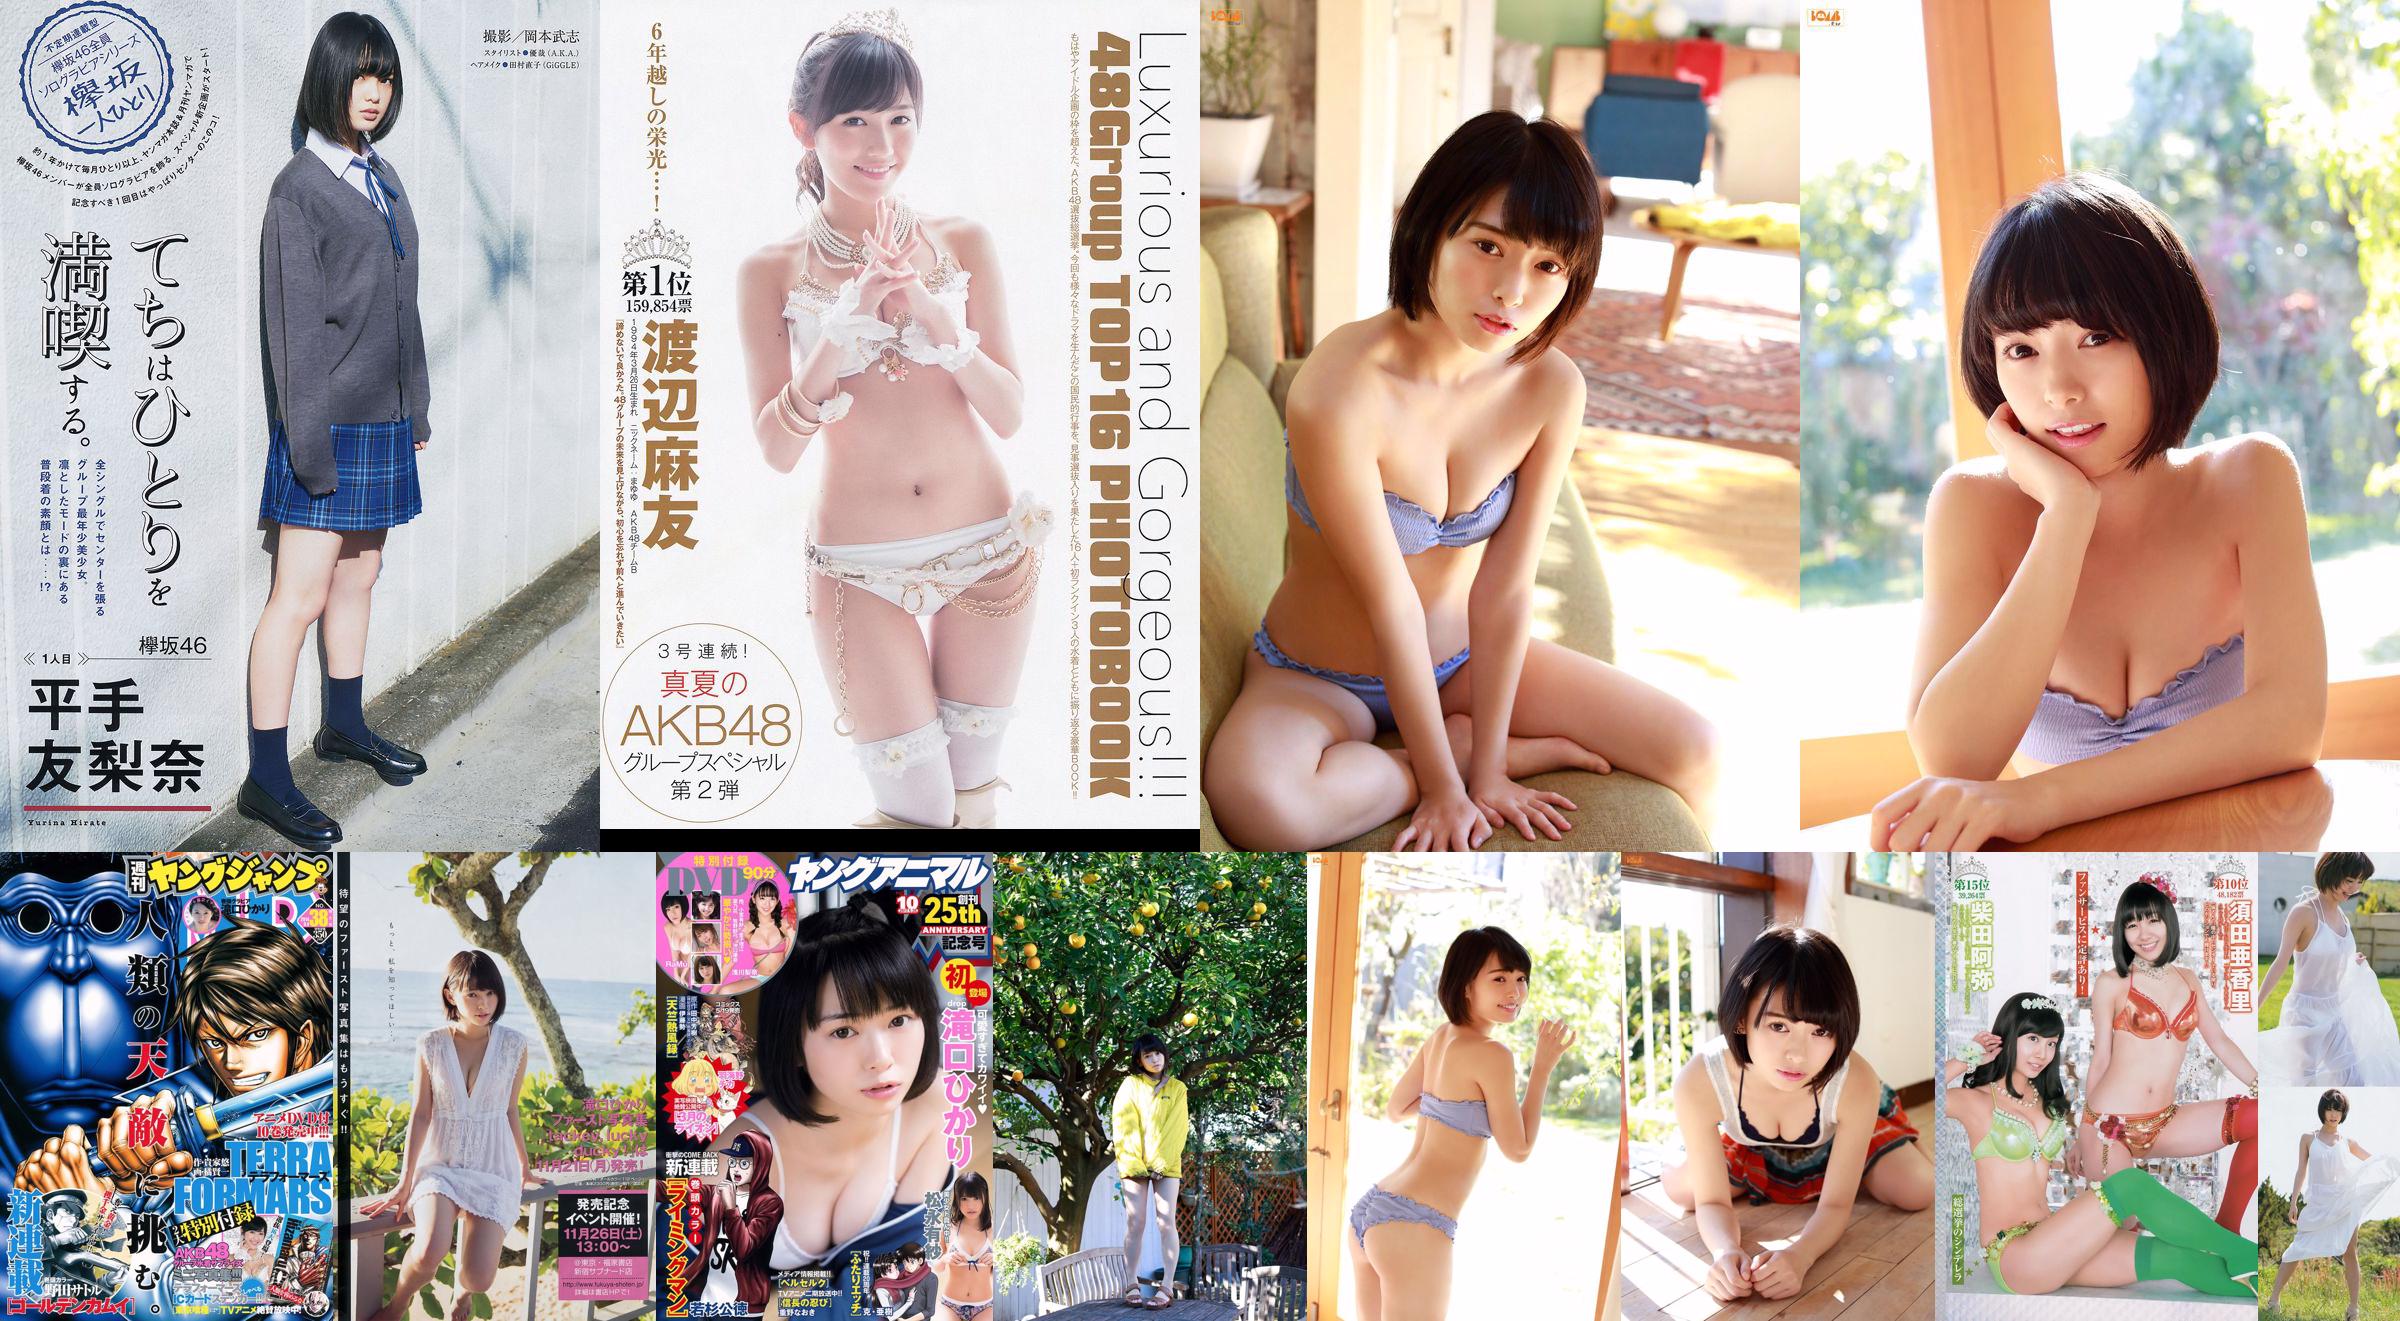 Hikari Takiguchi Hinako Kinoshita AKB48 Nonoka Ono [Weekly Young Jump] 2014 No.38 รูปภาพ No.7a3344 หน้า 1